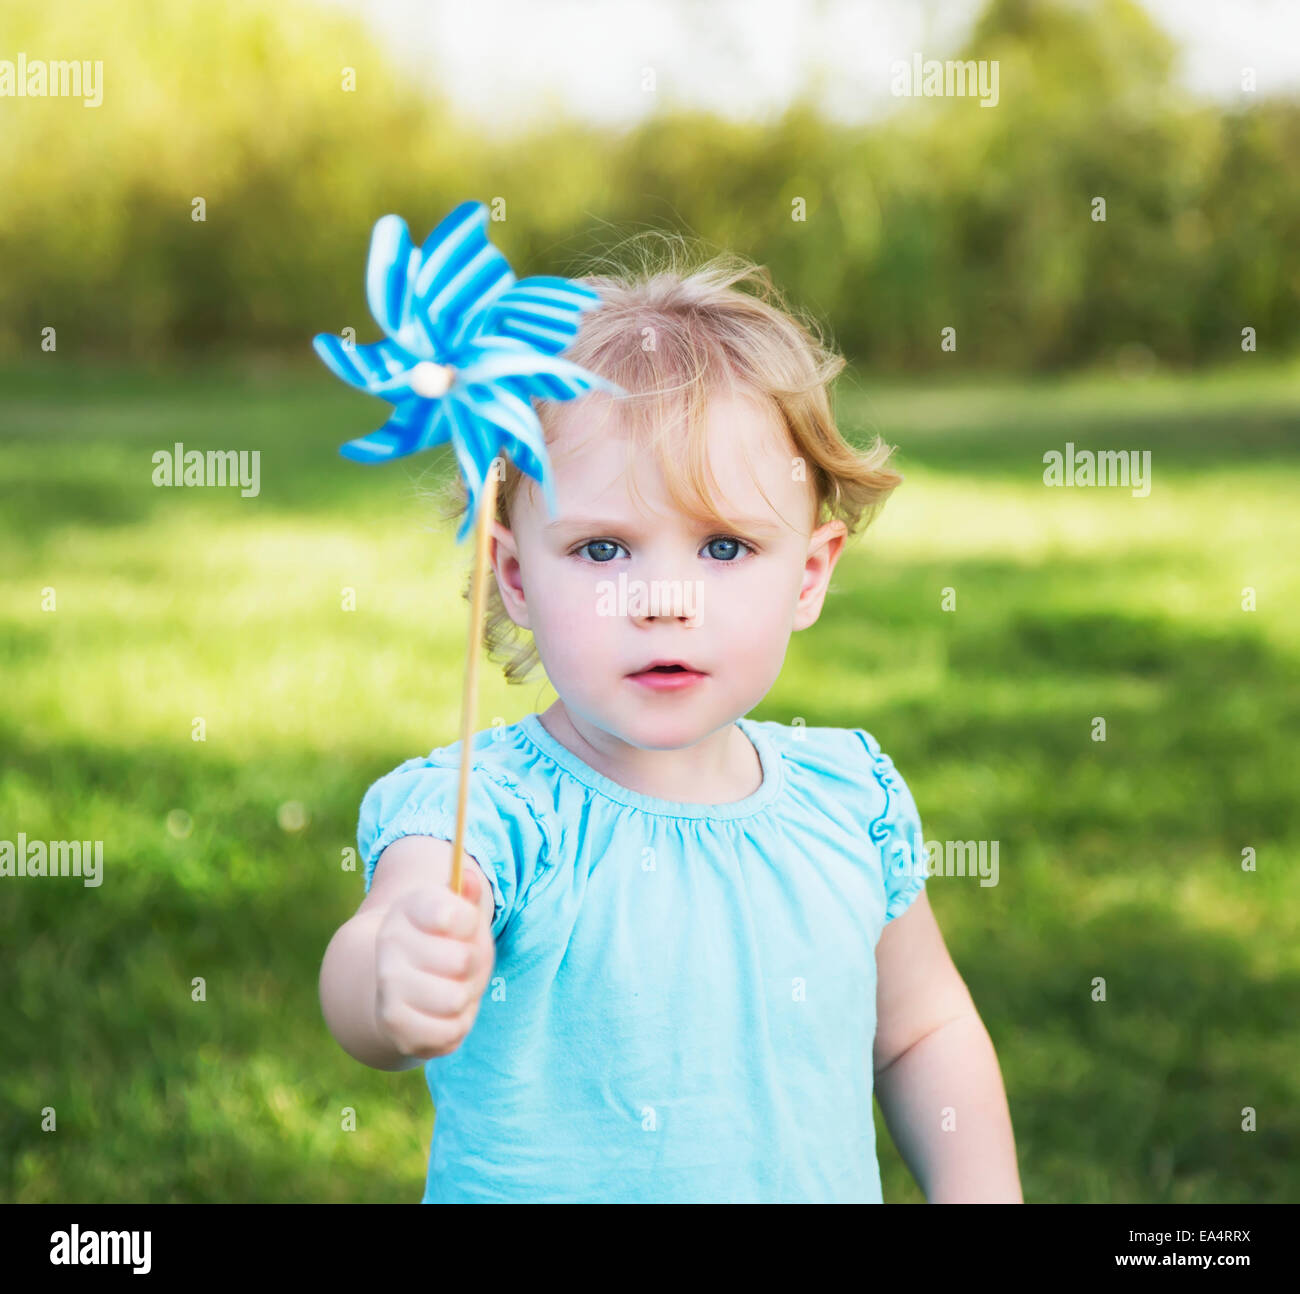 Young girl with pinwheel in a park; Edmonton, Alberta, Canada Stock Photo